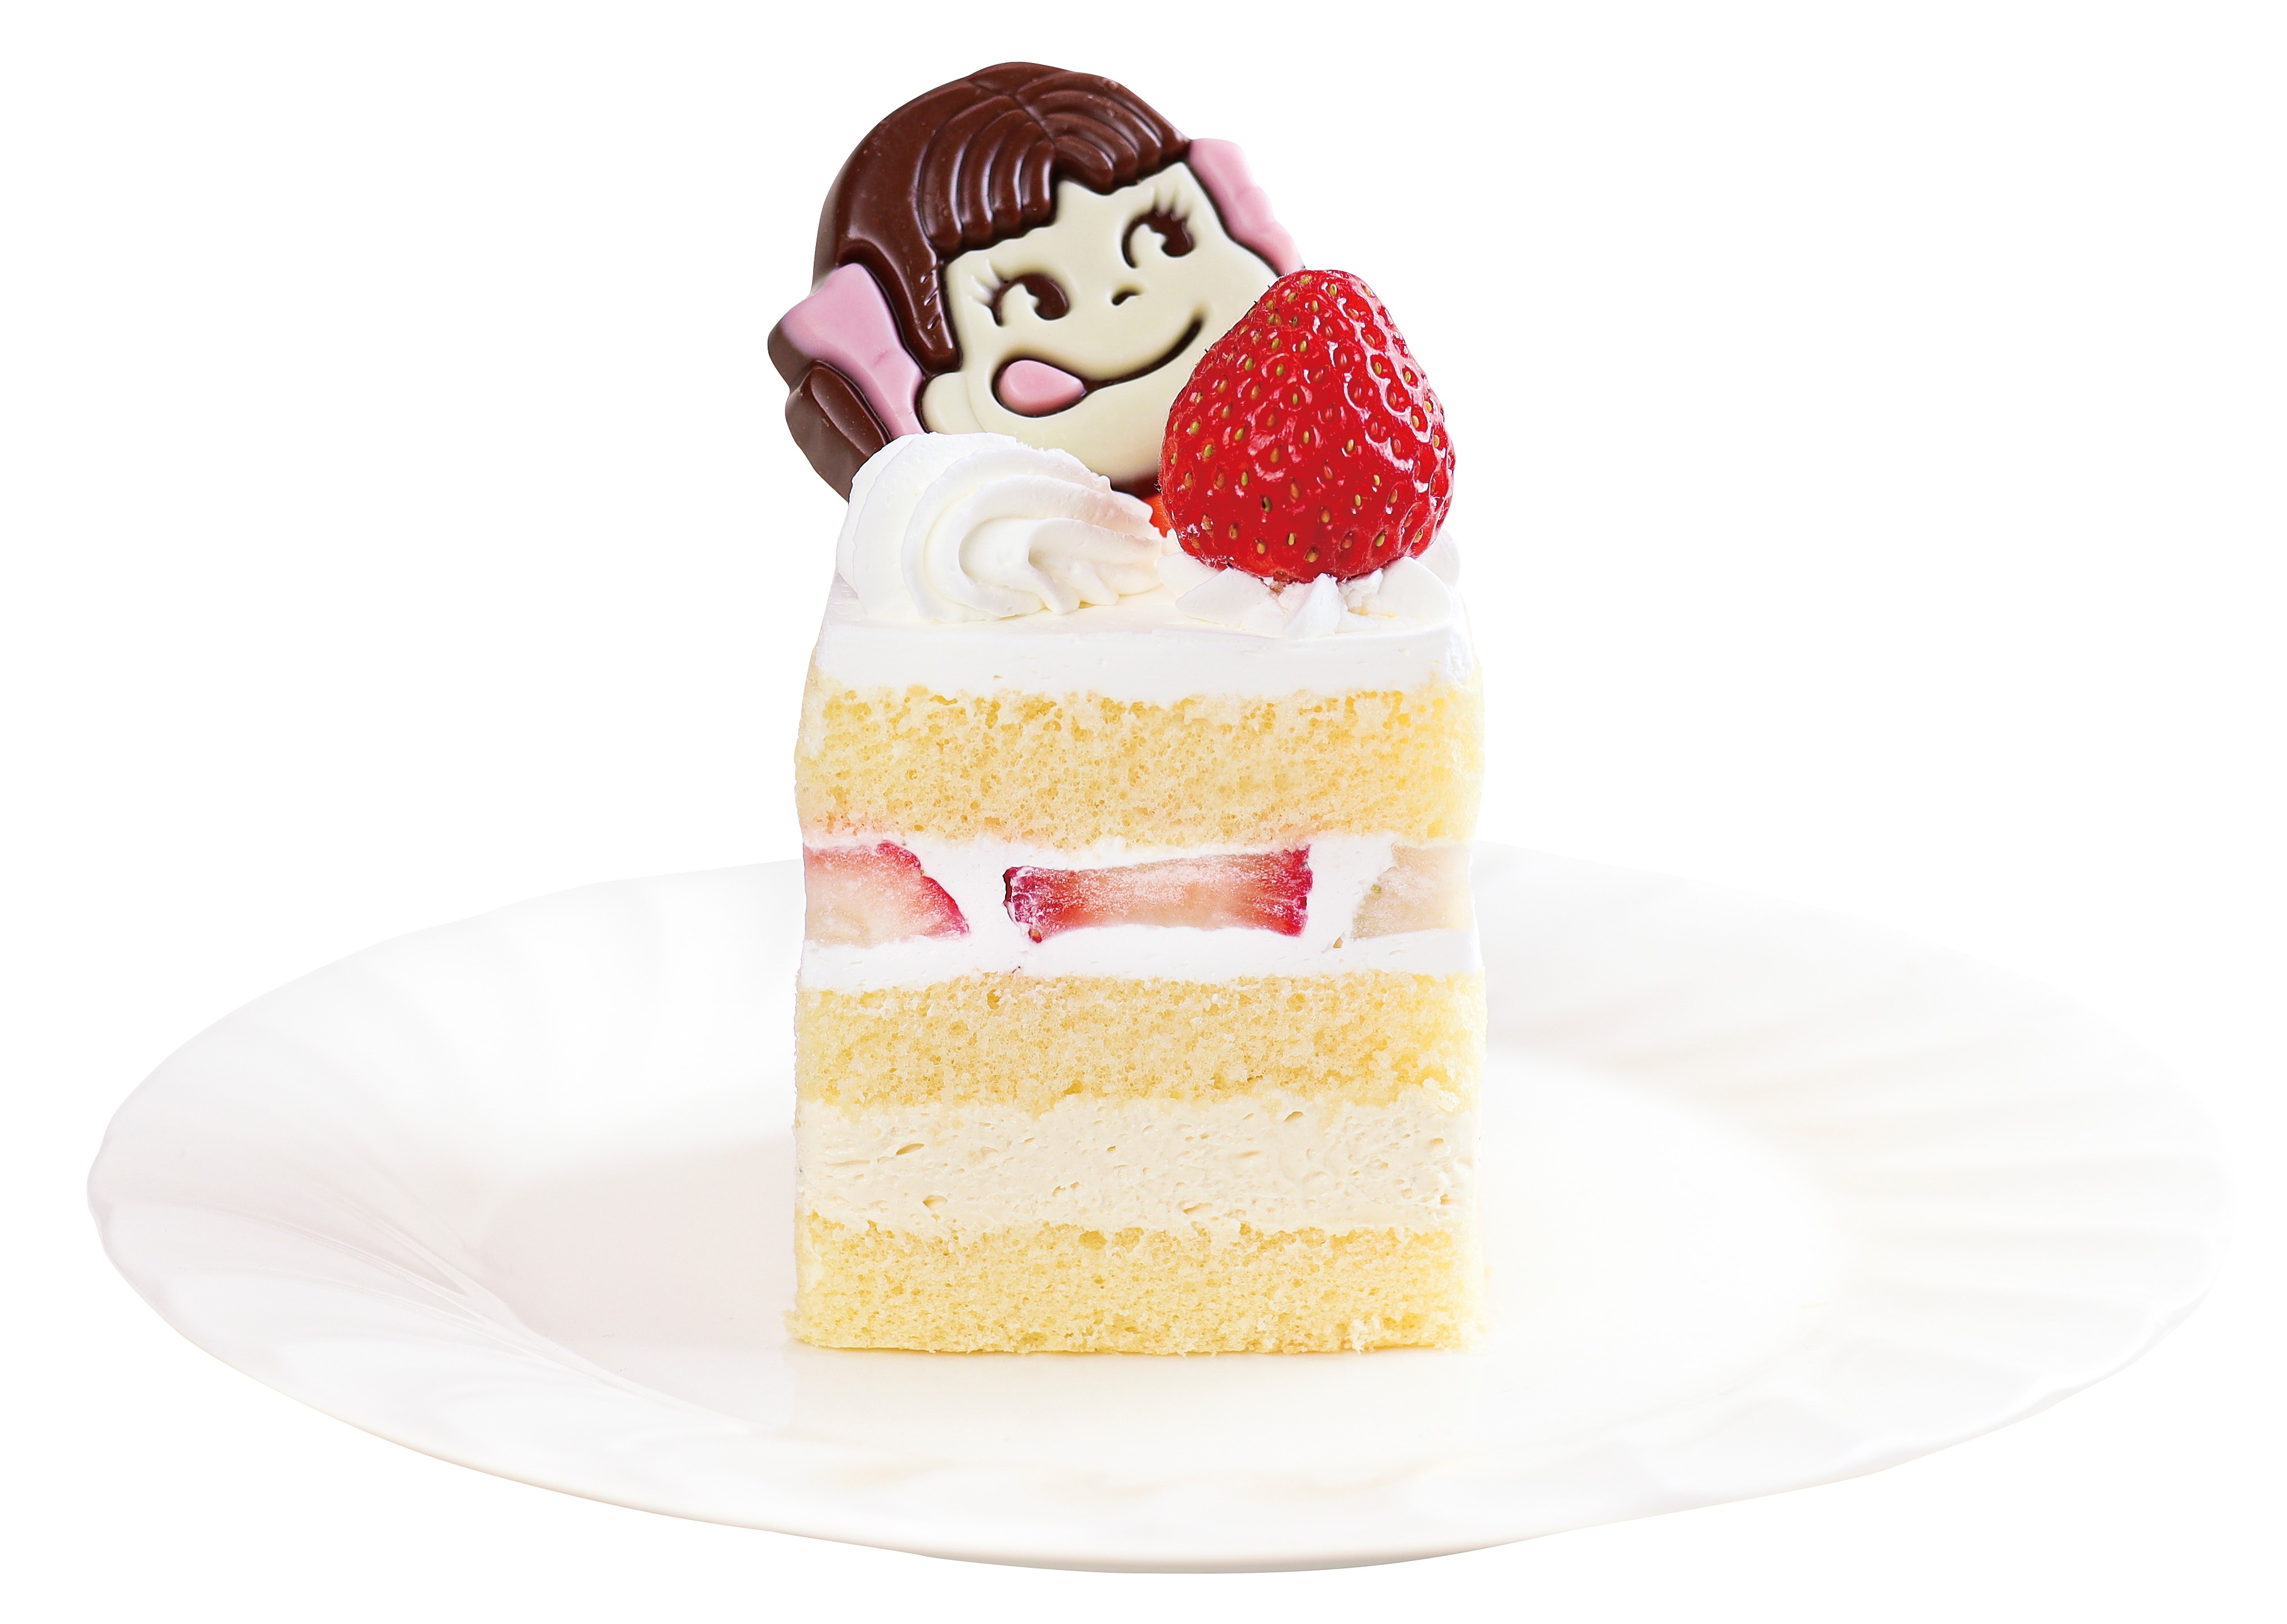 ショートケーキ12の物語 9月の主人公は女優 南果歩さん 分け合うと ふえるもの ショートケーキ12の物語 ペコちゃんからのおくりもの 新発売 不二家のプレスリリース